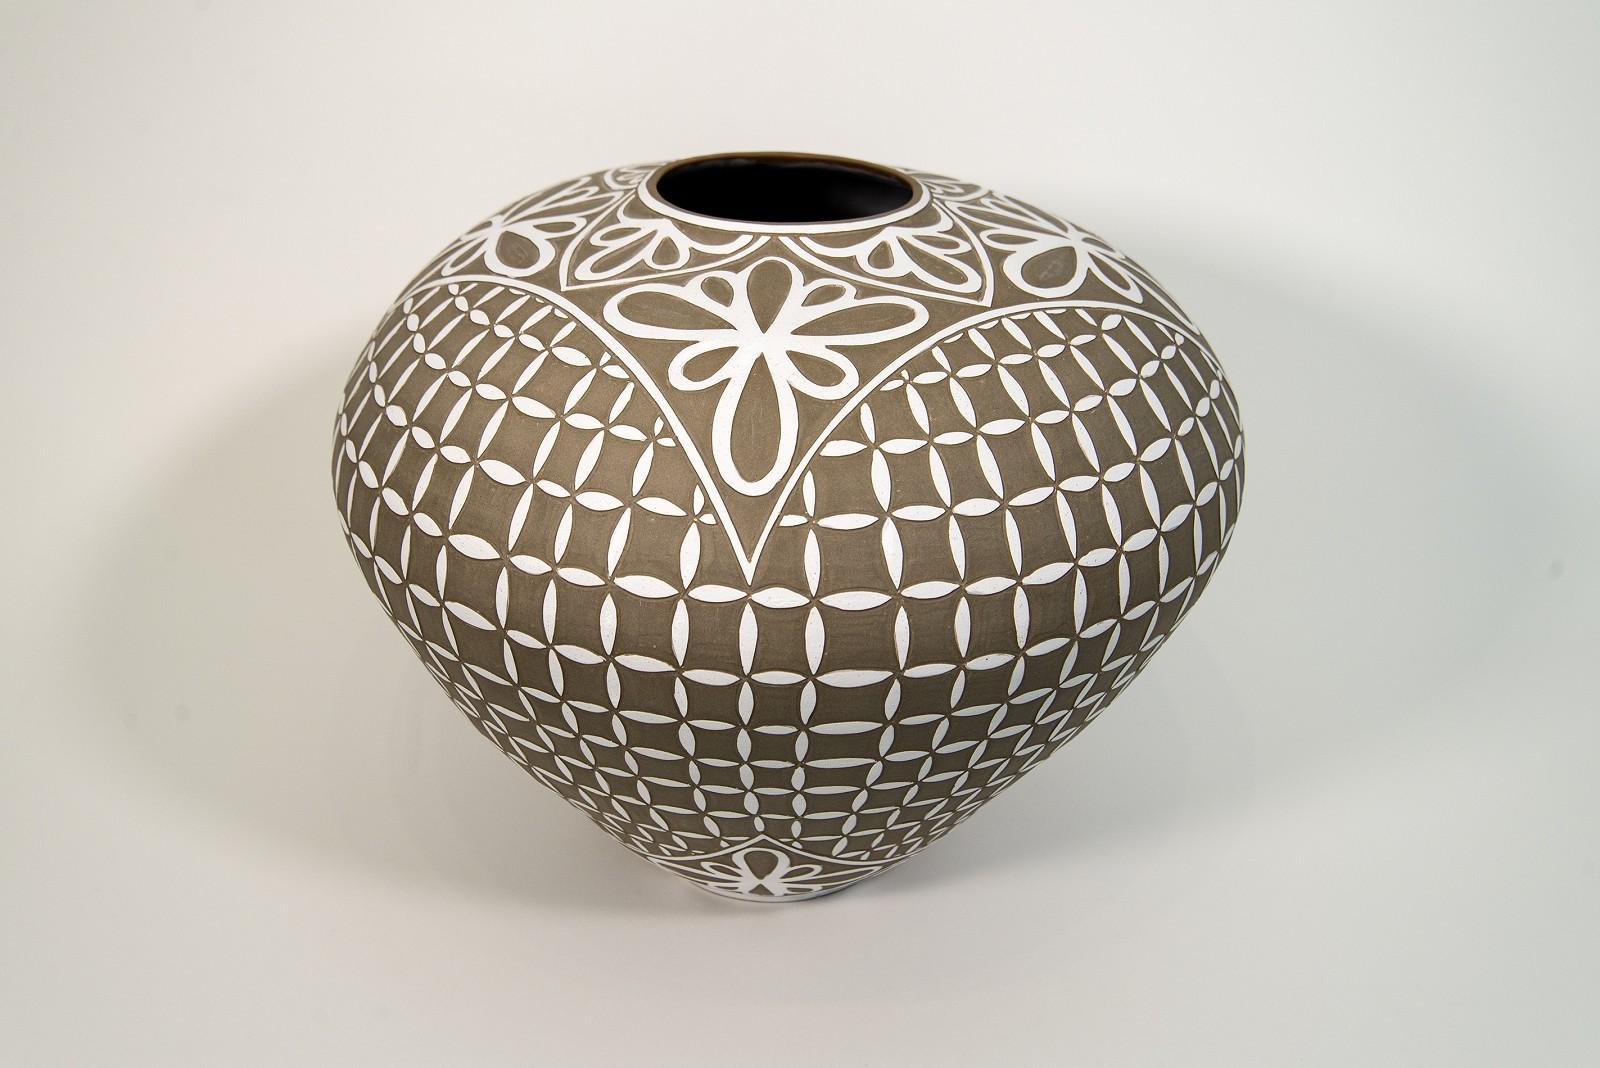 Großes Gefäß mit graviertem Blütenblattmotiv – dekoratives, handgefertigtes Porzellangefäß (Zeitgenössisch), Sculpture, von Loren Kaplan